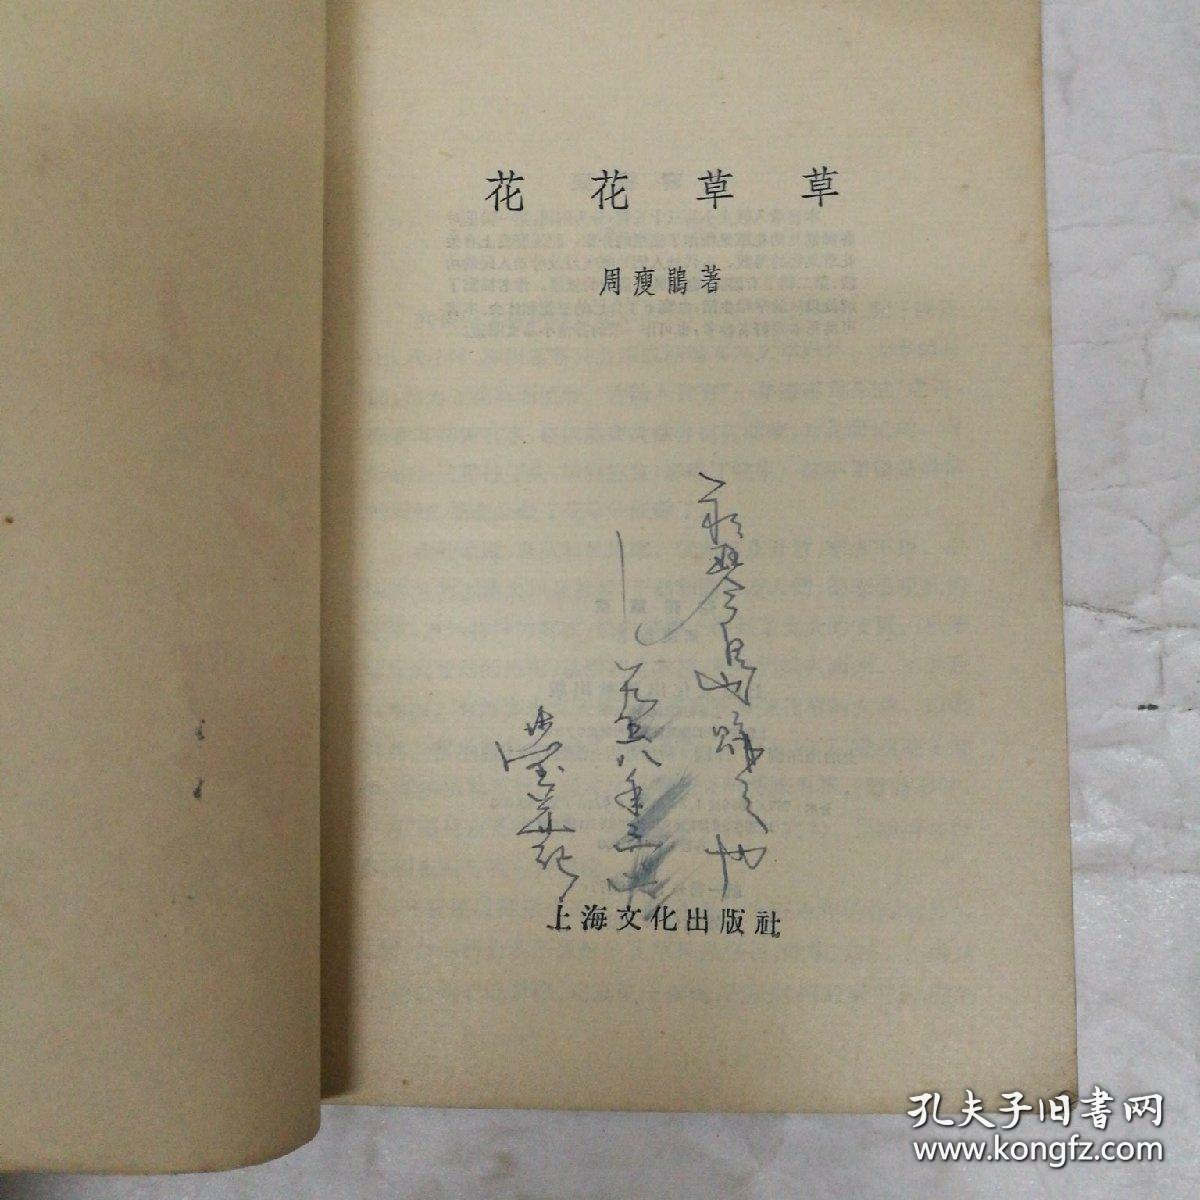 花花草草 周瘦鹃著 1956年上海文化版